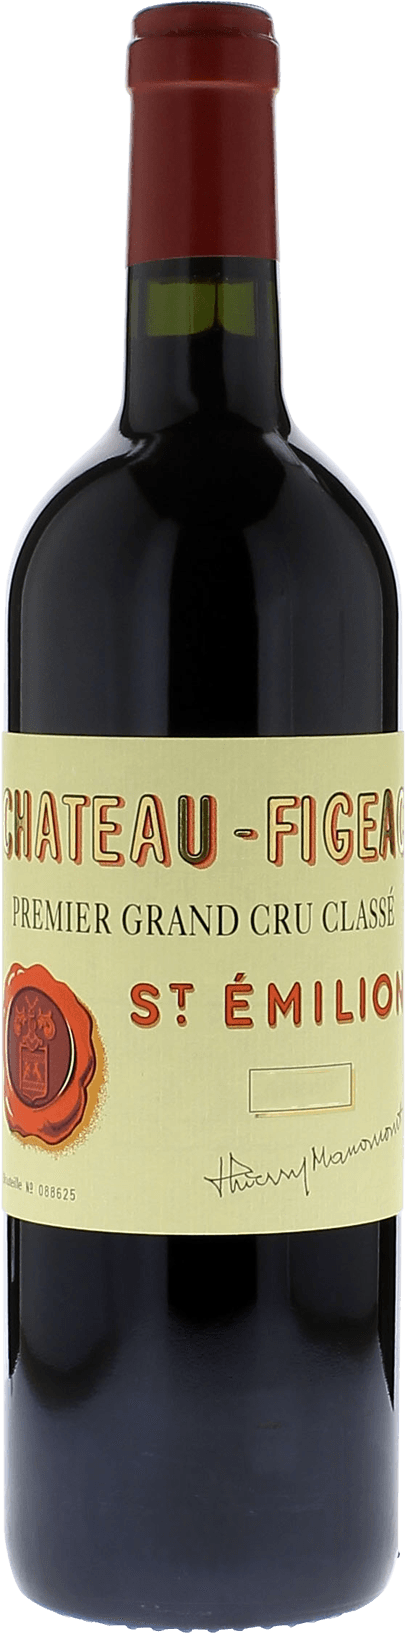 Figeac 2003 1er Grand cru class Saint-Emilion, Bordeaux rouge